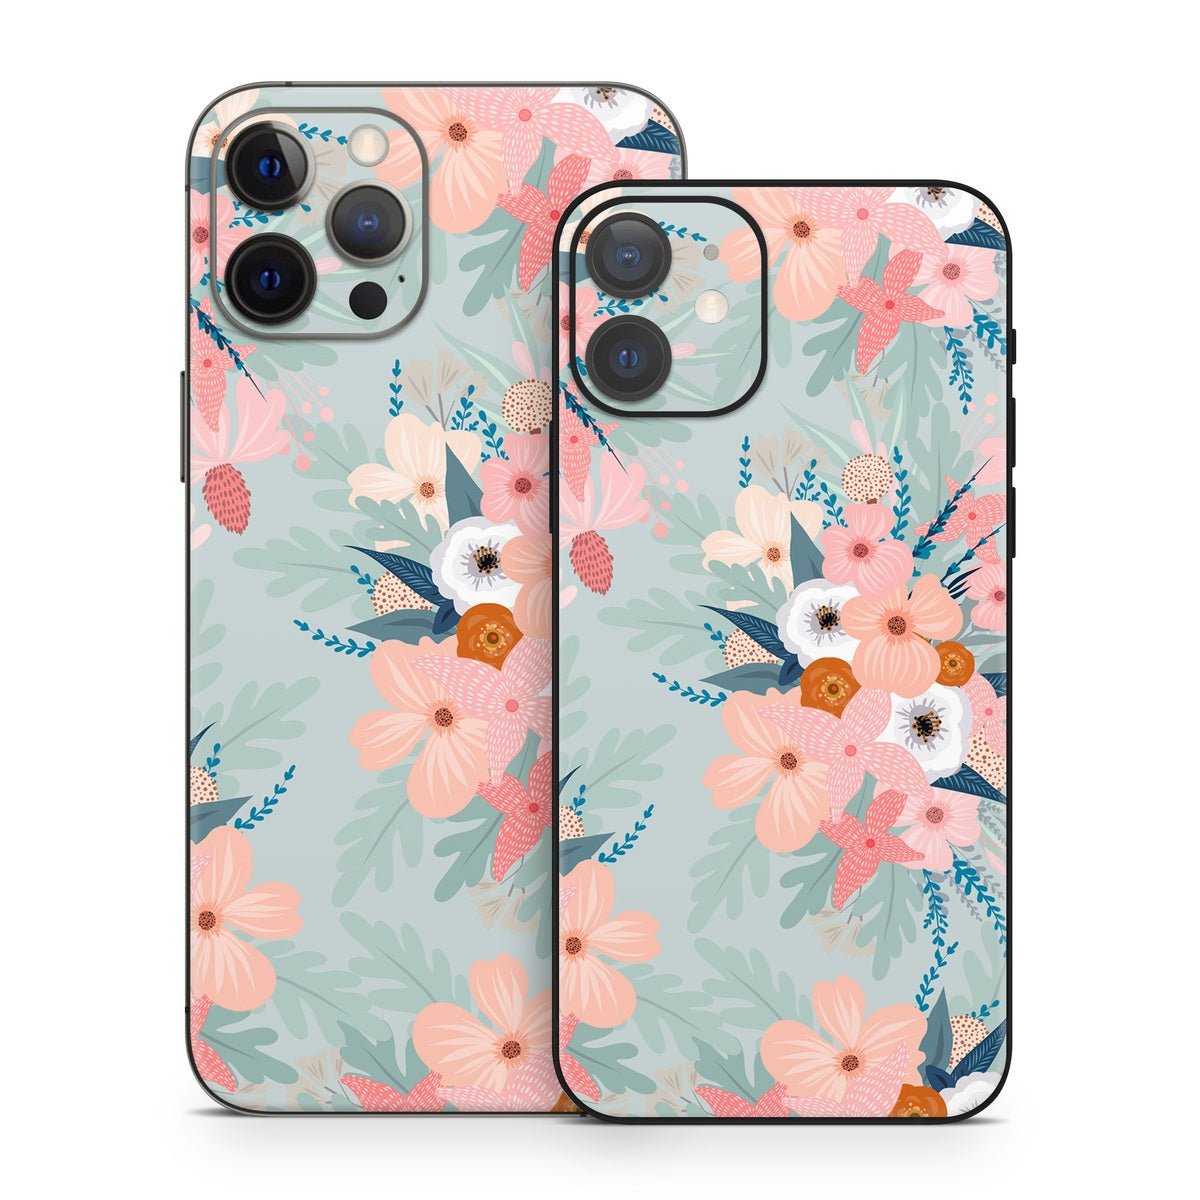 Ada Garden - Apple iPhone 12 Skin - Iveta Abolina - DecalGirl